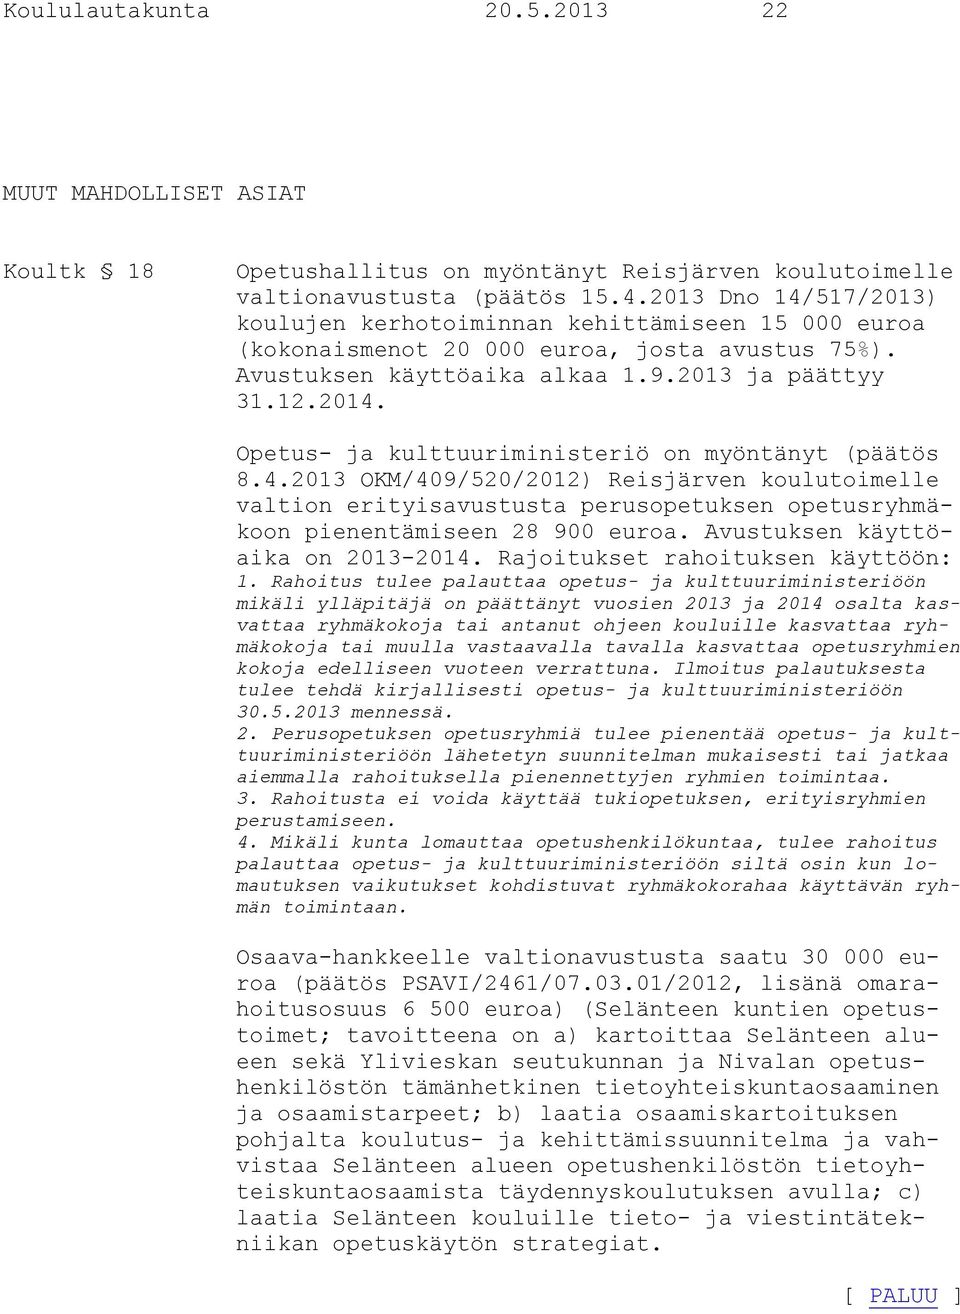 Opetus- ja kulttuuriministeriö on myöntänyt (päätös 8.4.2013 OKM/409/520/2012) Reisjärven koulutoimelle valtion erityisavustusta perusopetuksen opetusryhmäkoon pienentämiseen 28 900 euroa.